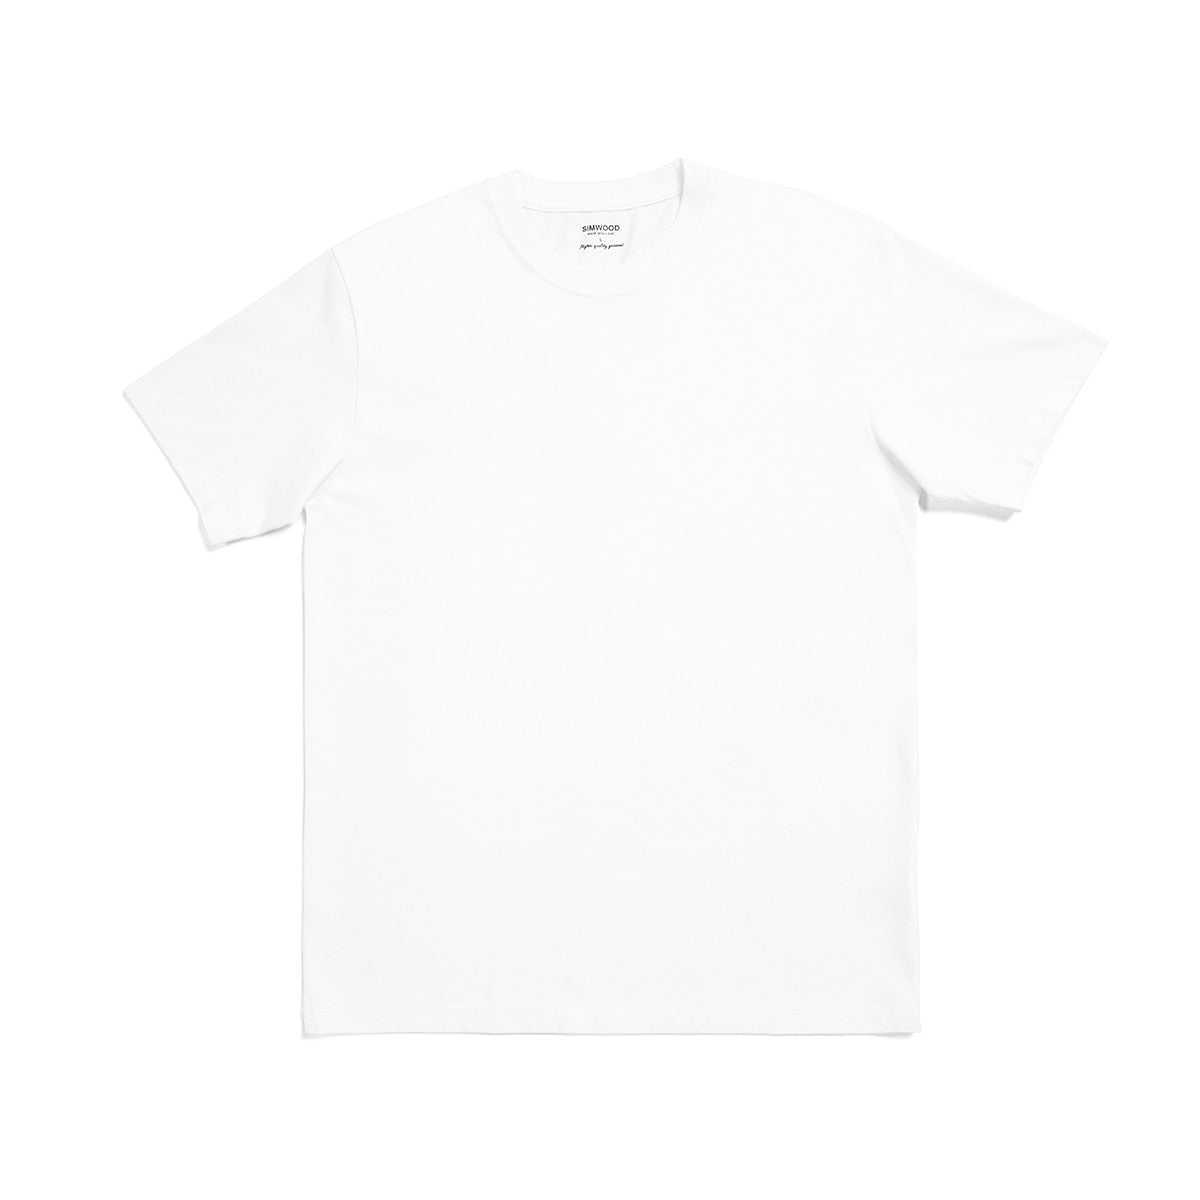 100% Baumwolle Weiß Solid T-Shirt Herren Kausal O-Ausschnitt Basic T-Shirt Herren Hochwertige Klassische Tops XL / XXL / XXXL